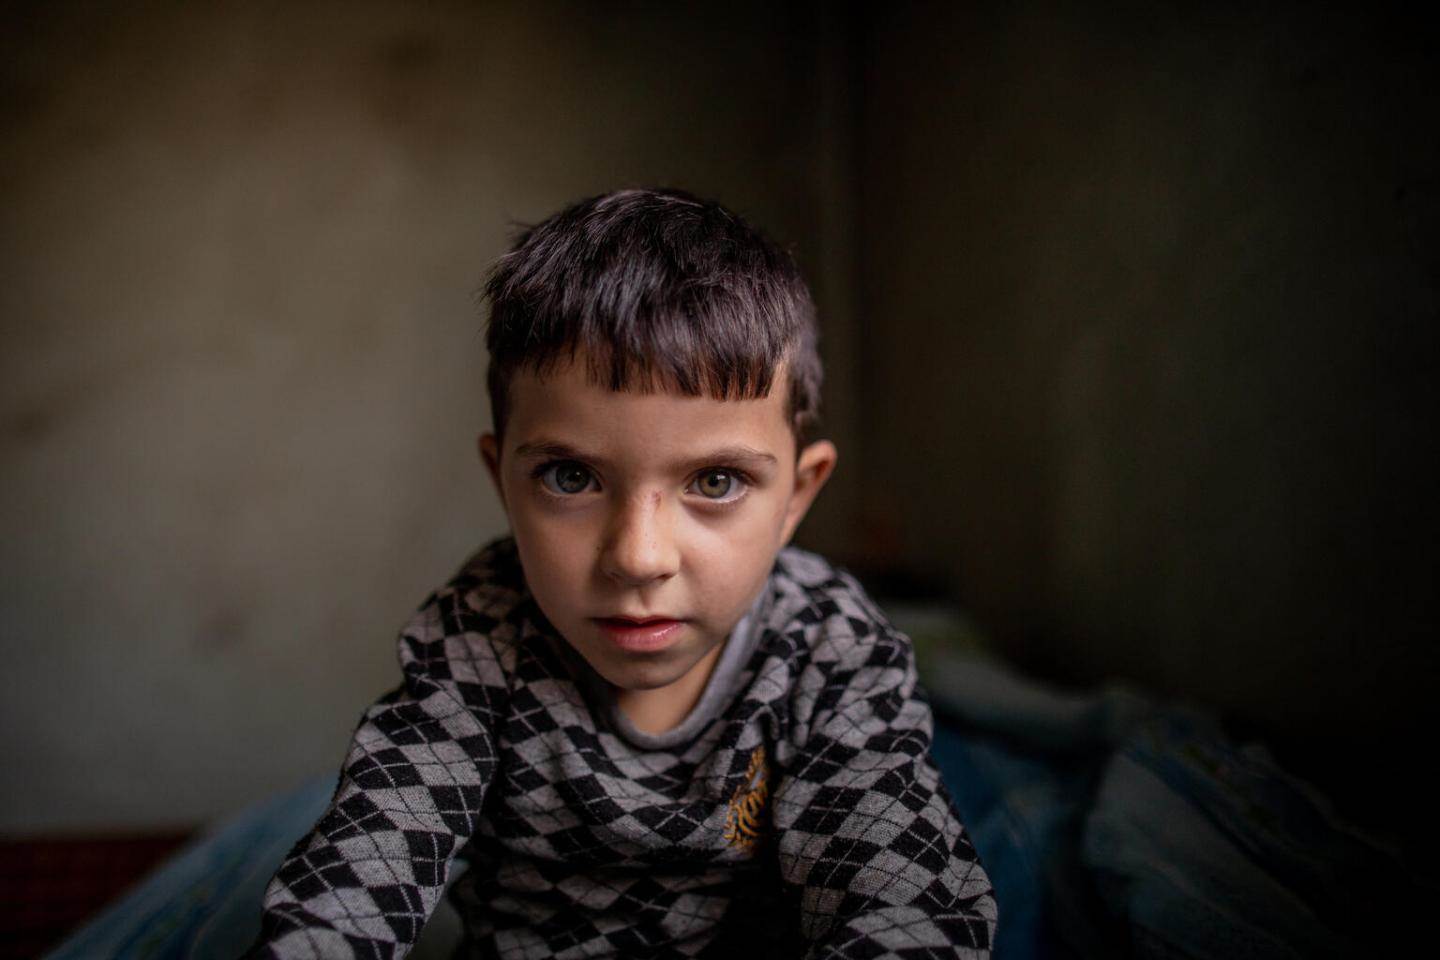 Ljósmynd: UNICEF/Babajanyan - mynd